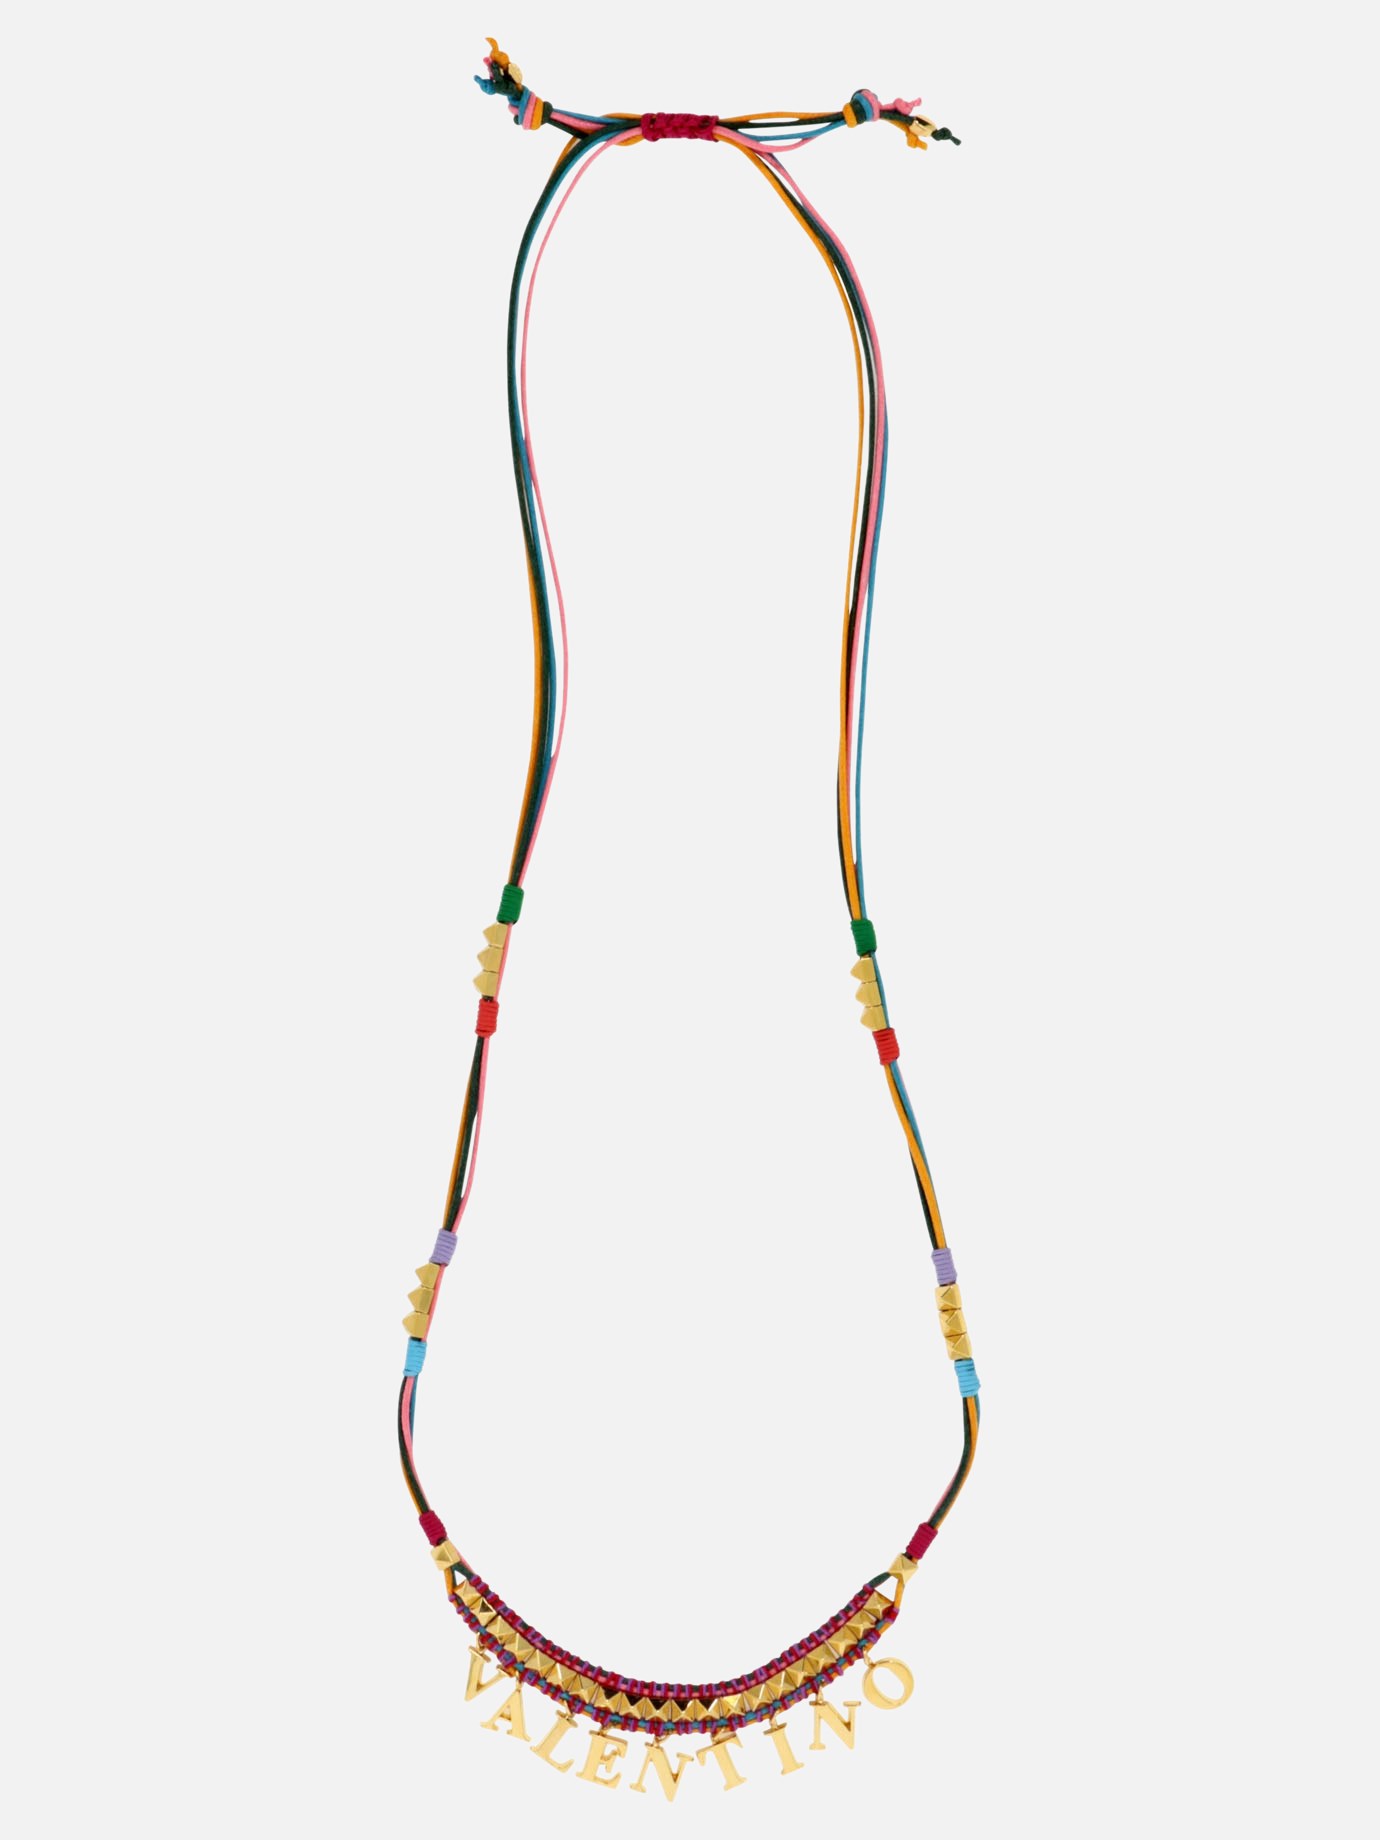  Color Signs  necklaceby Valentino Garavani - 1